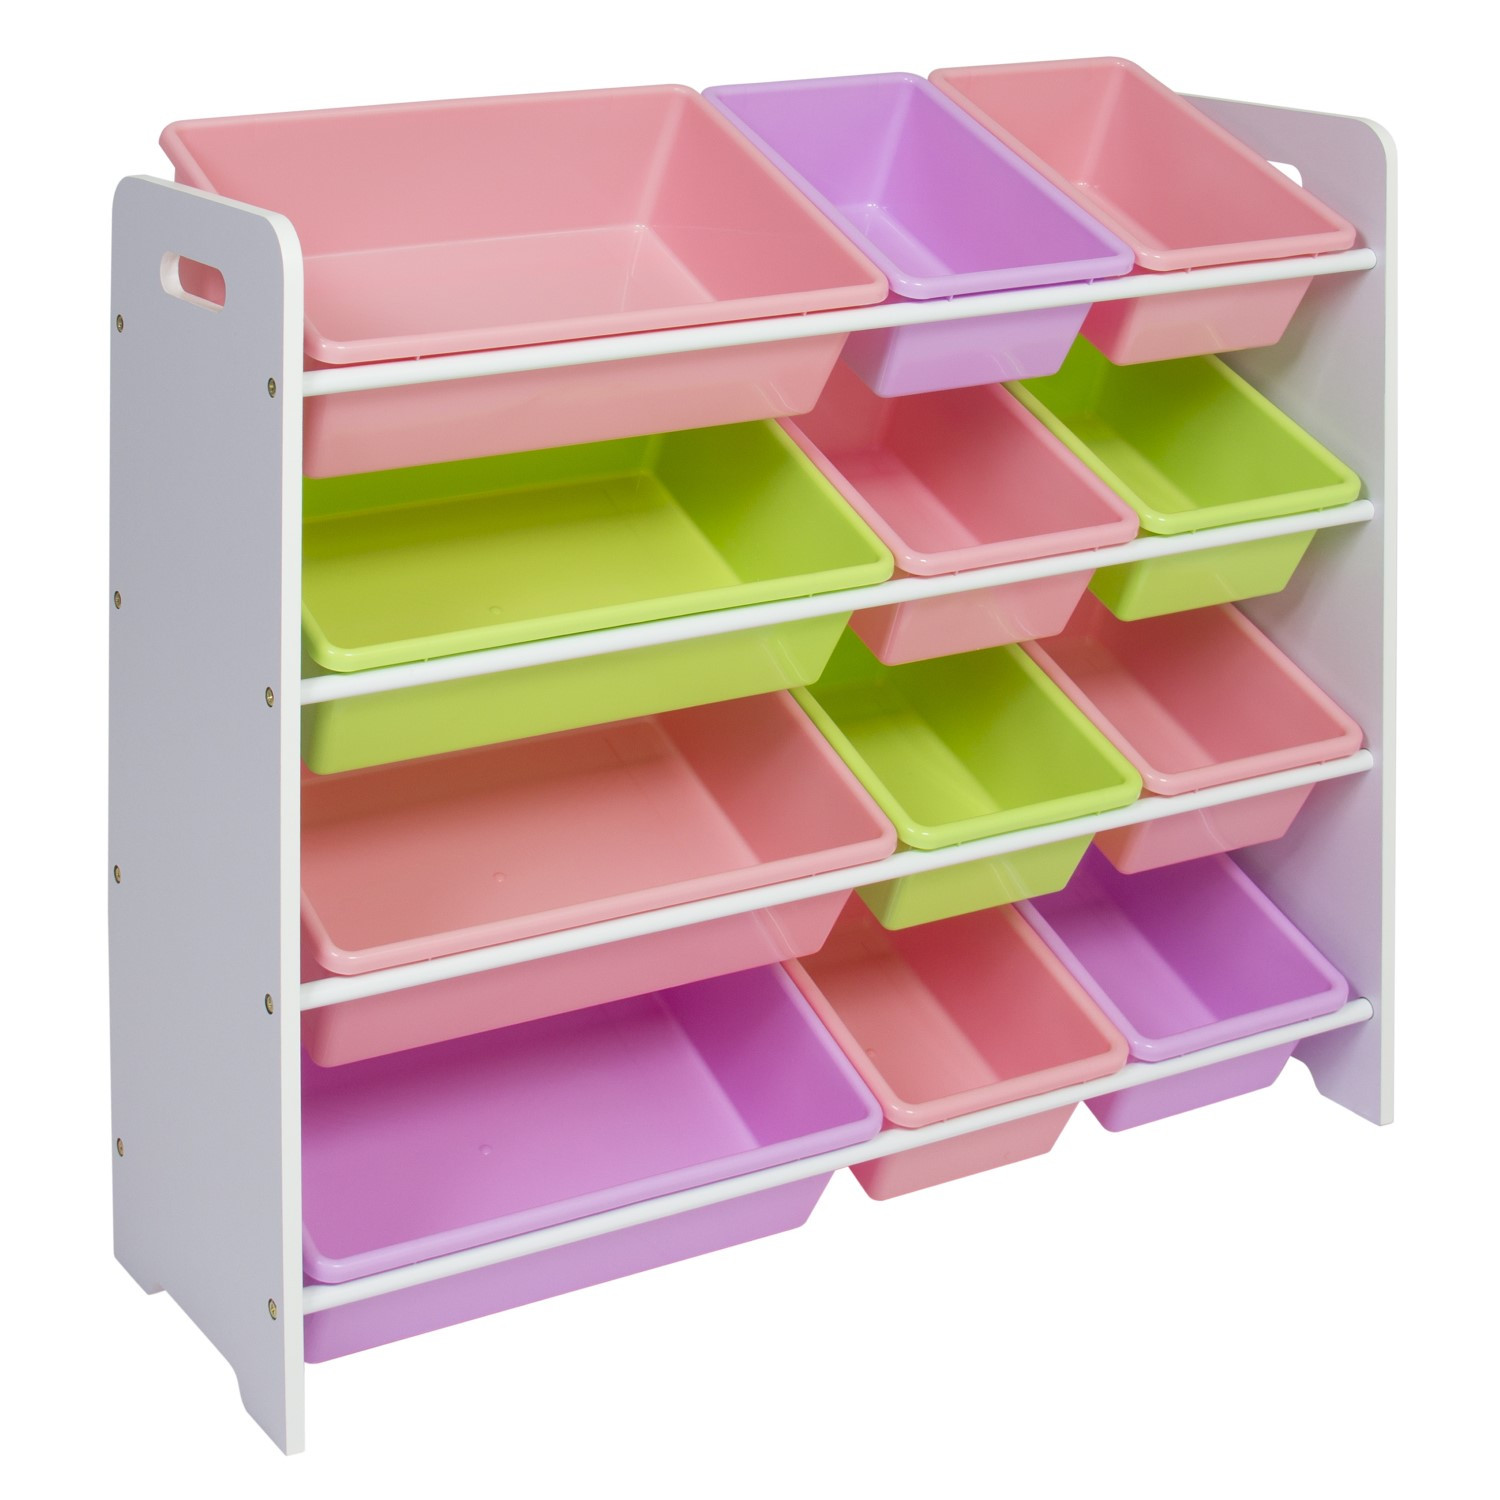 Child Storage Bins
 Best Choice Products Toy Bin Organizer Kids Childrens